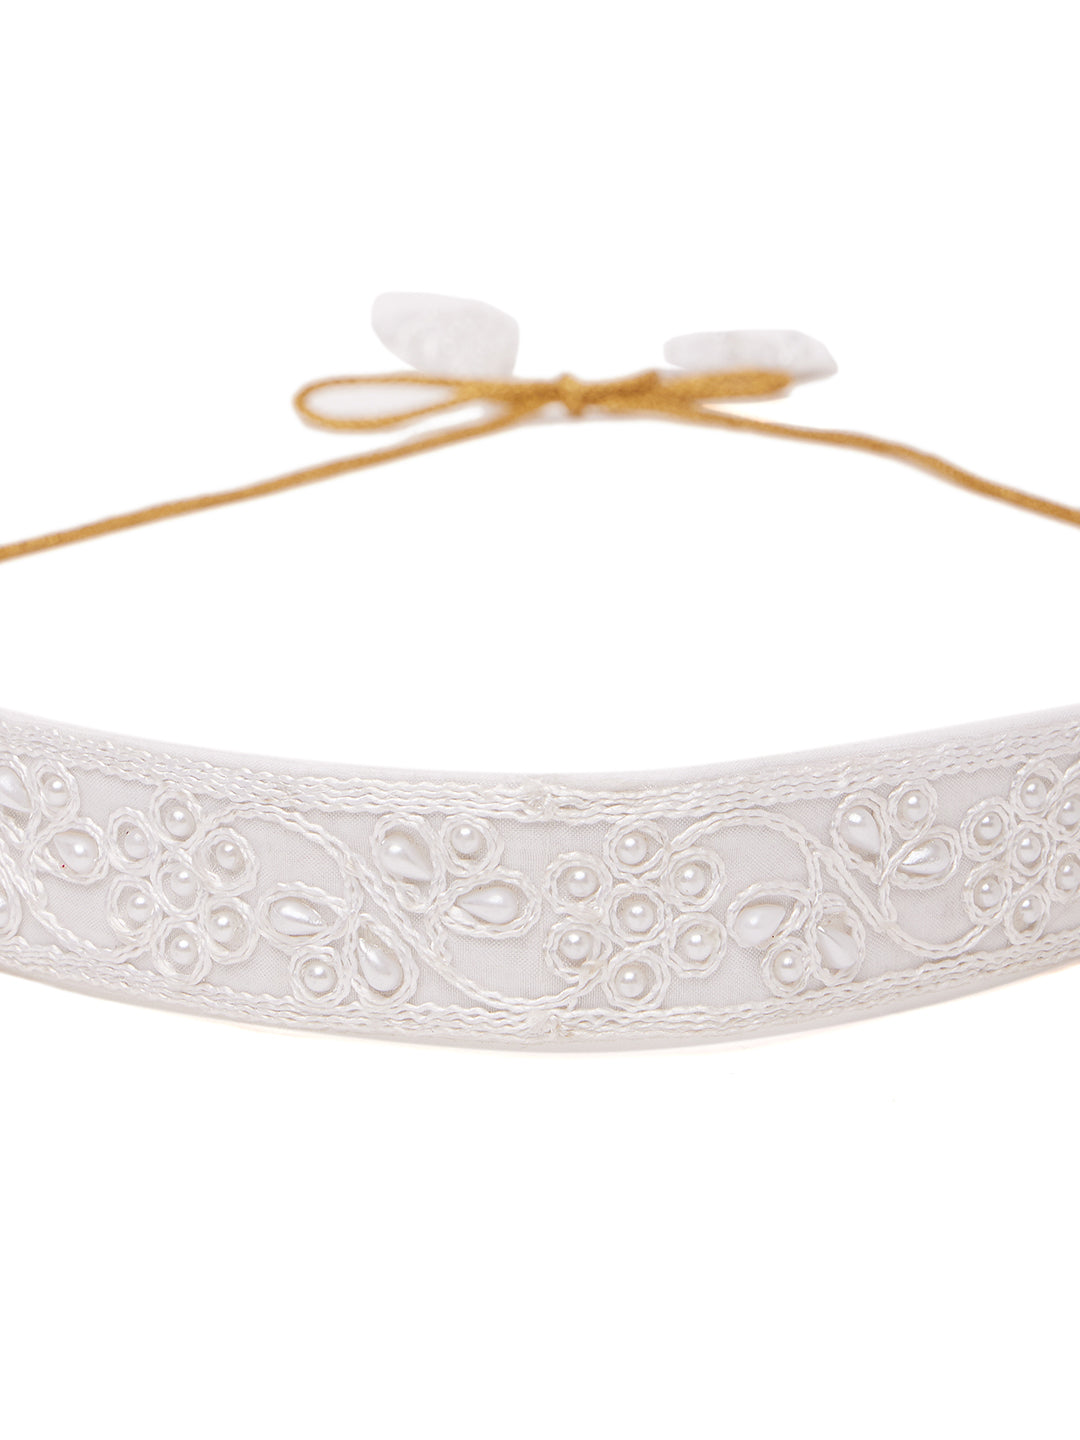 Athena Women White Embellished Pearls Belt - Athena Lifestyle